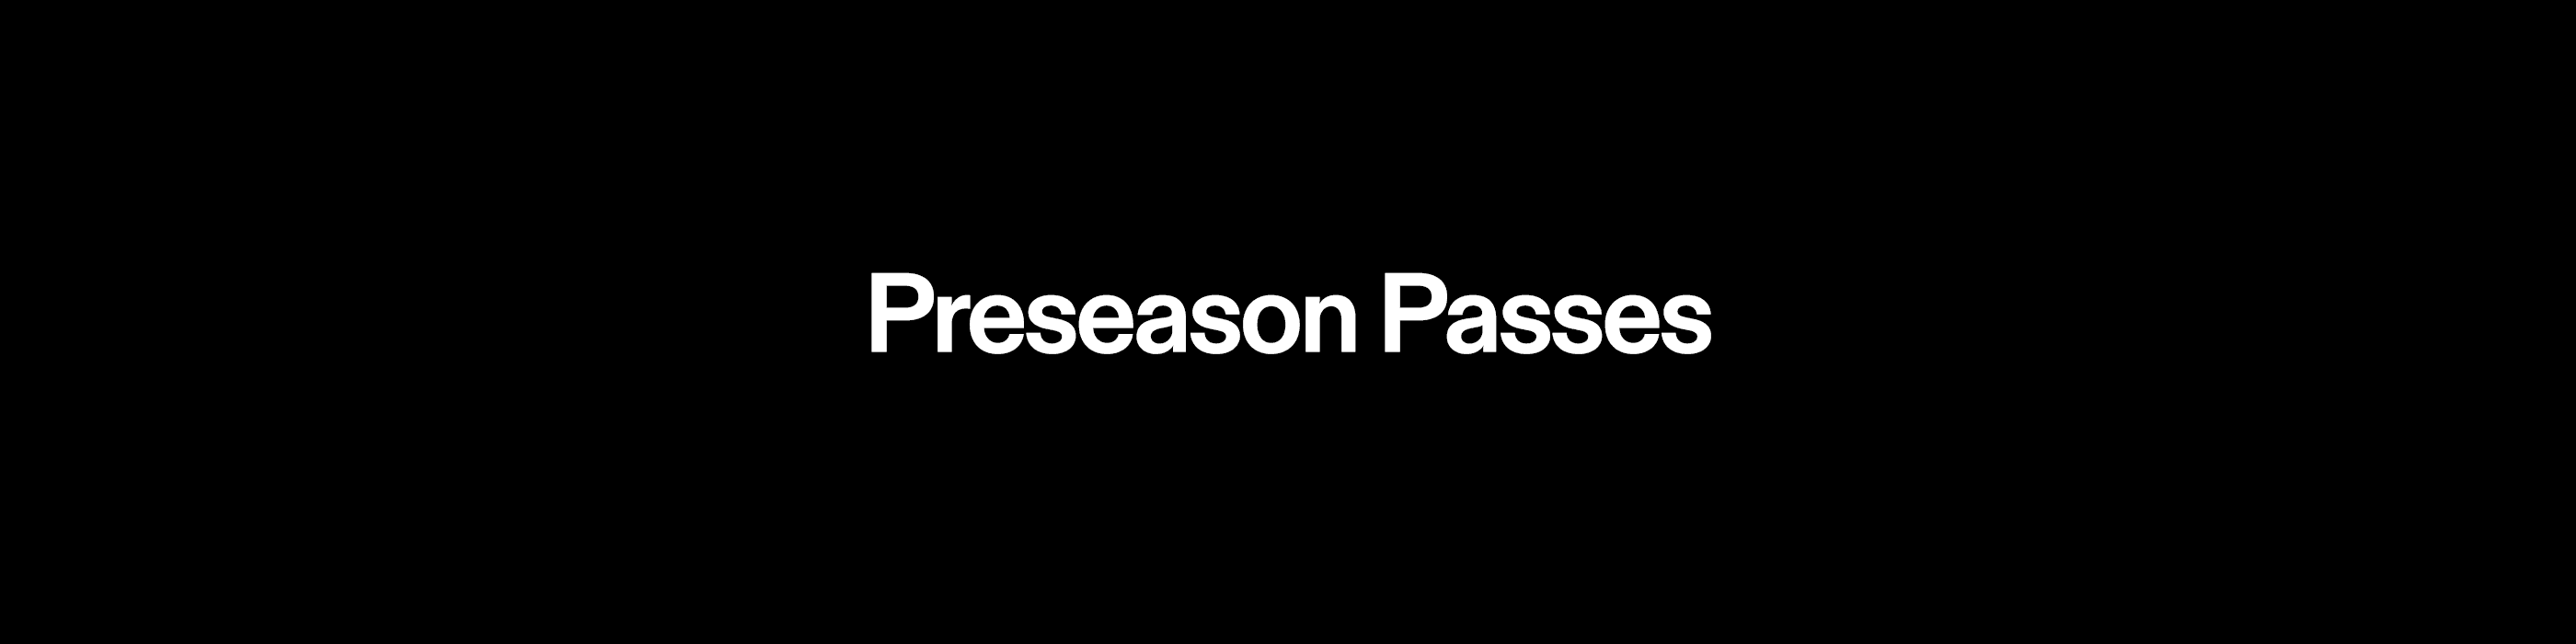 Preseason Access Collection